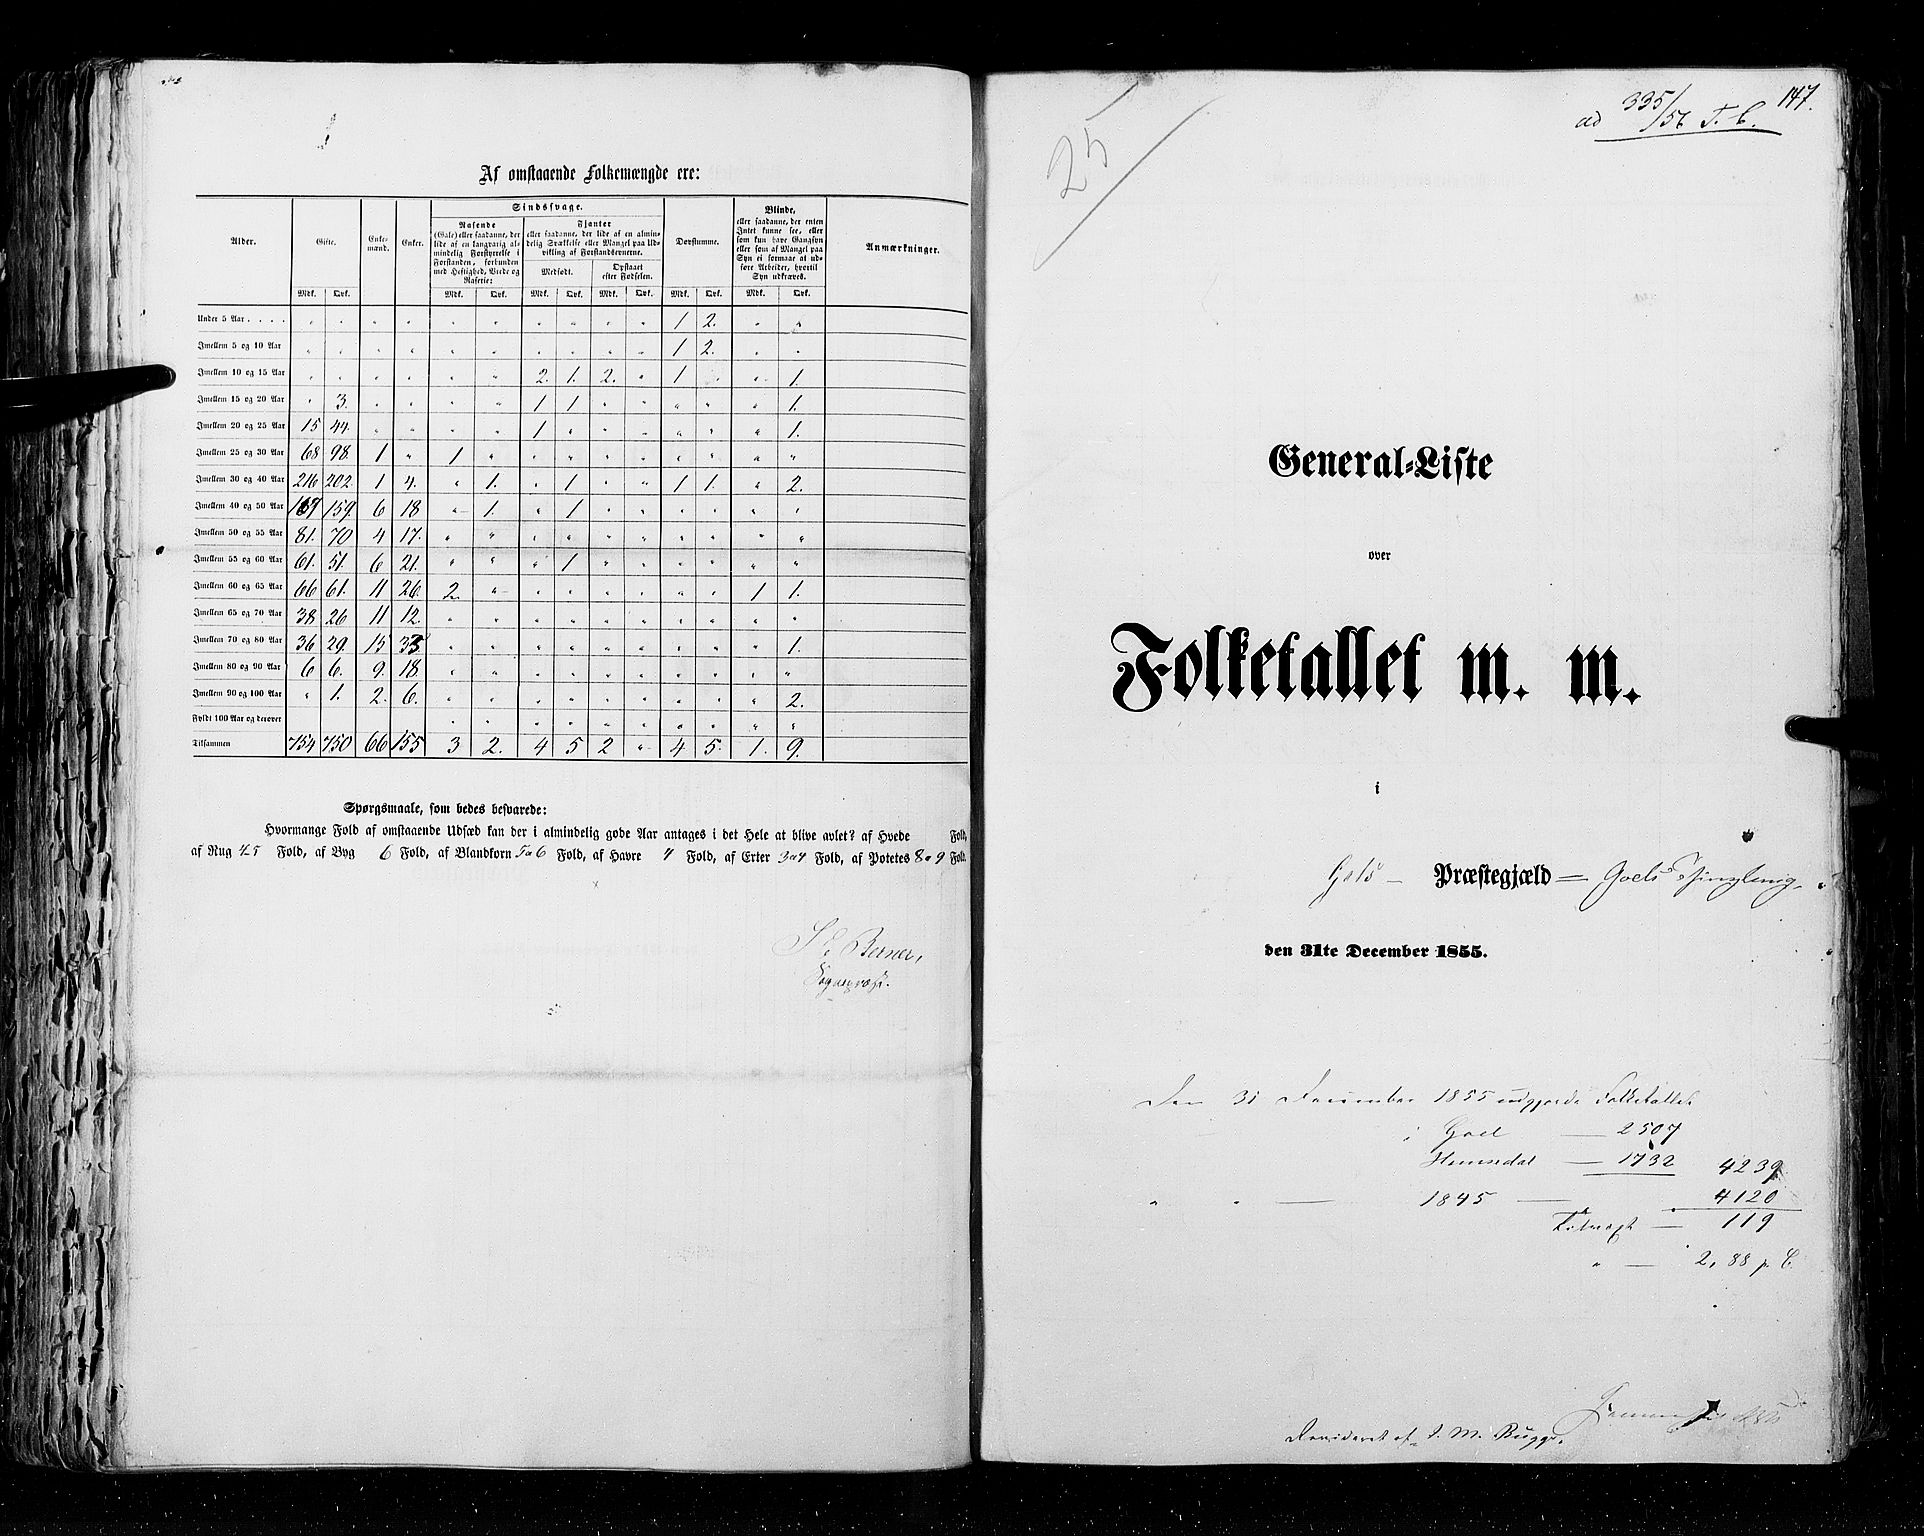 RA, Folketellingen 1855, bind 2: Kristians amt, Buskerud amt og Jarlsberg og Larvik amt, 1855, s. 147